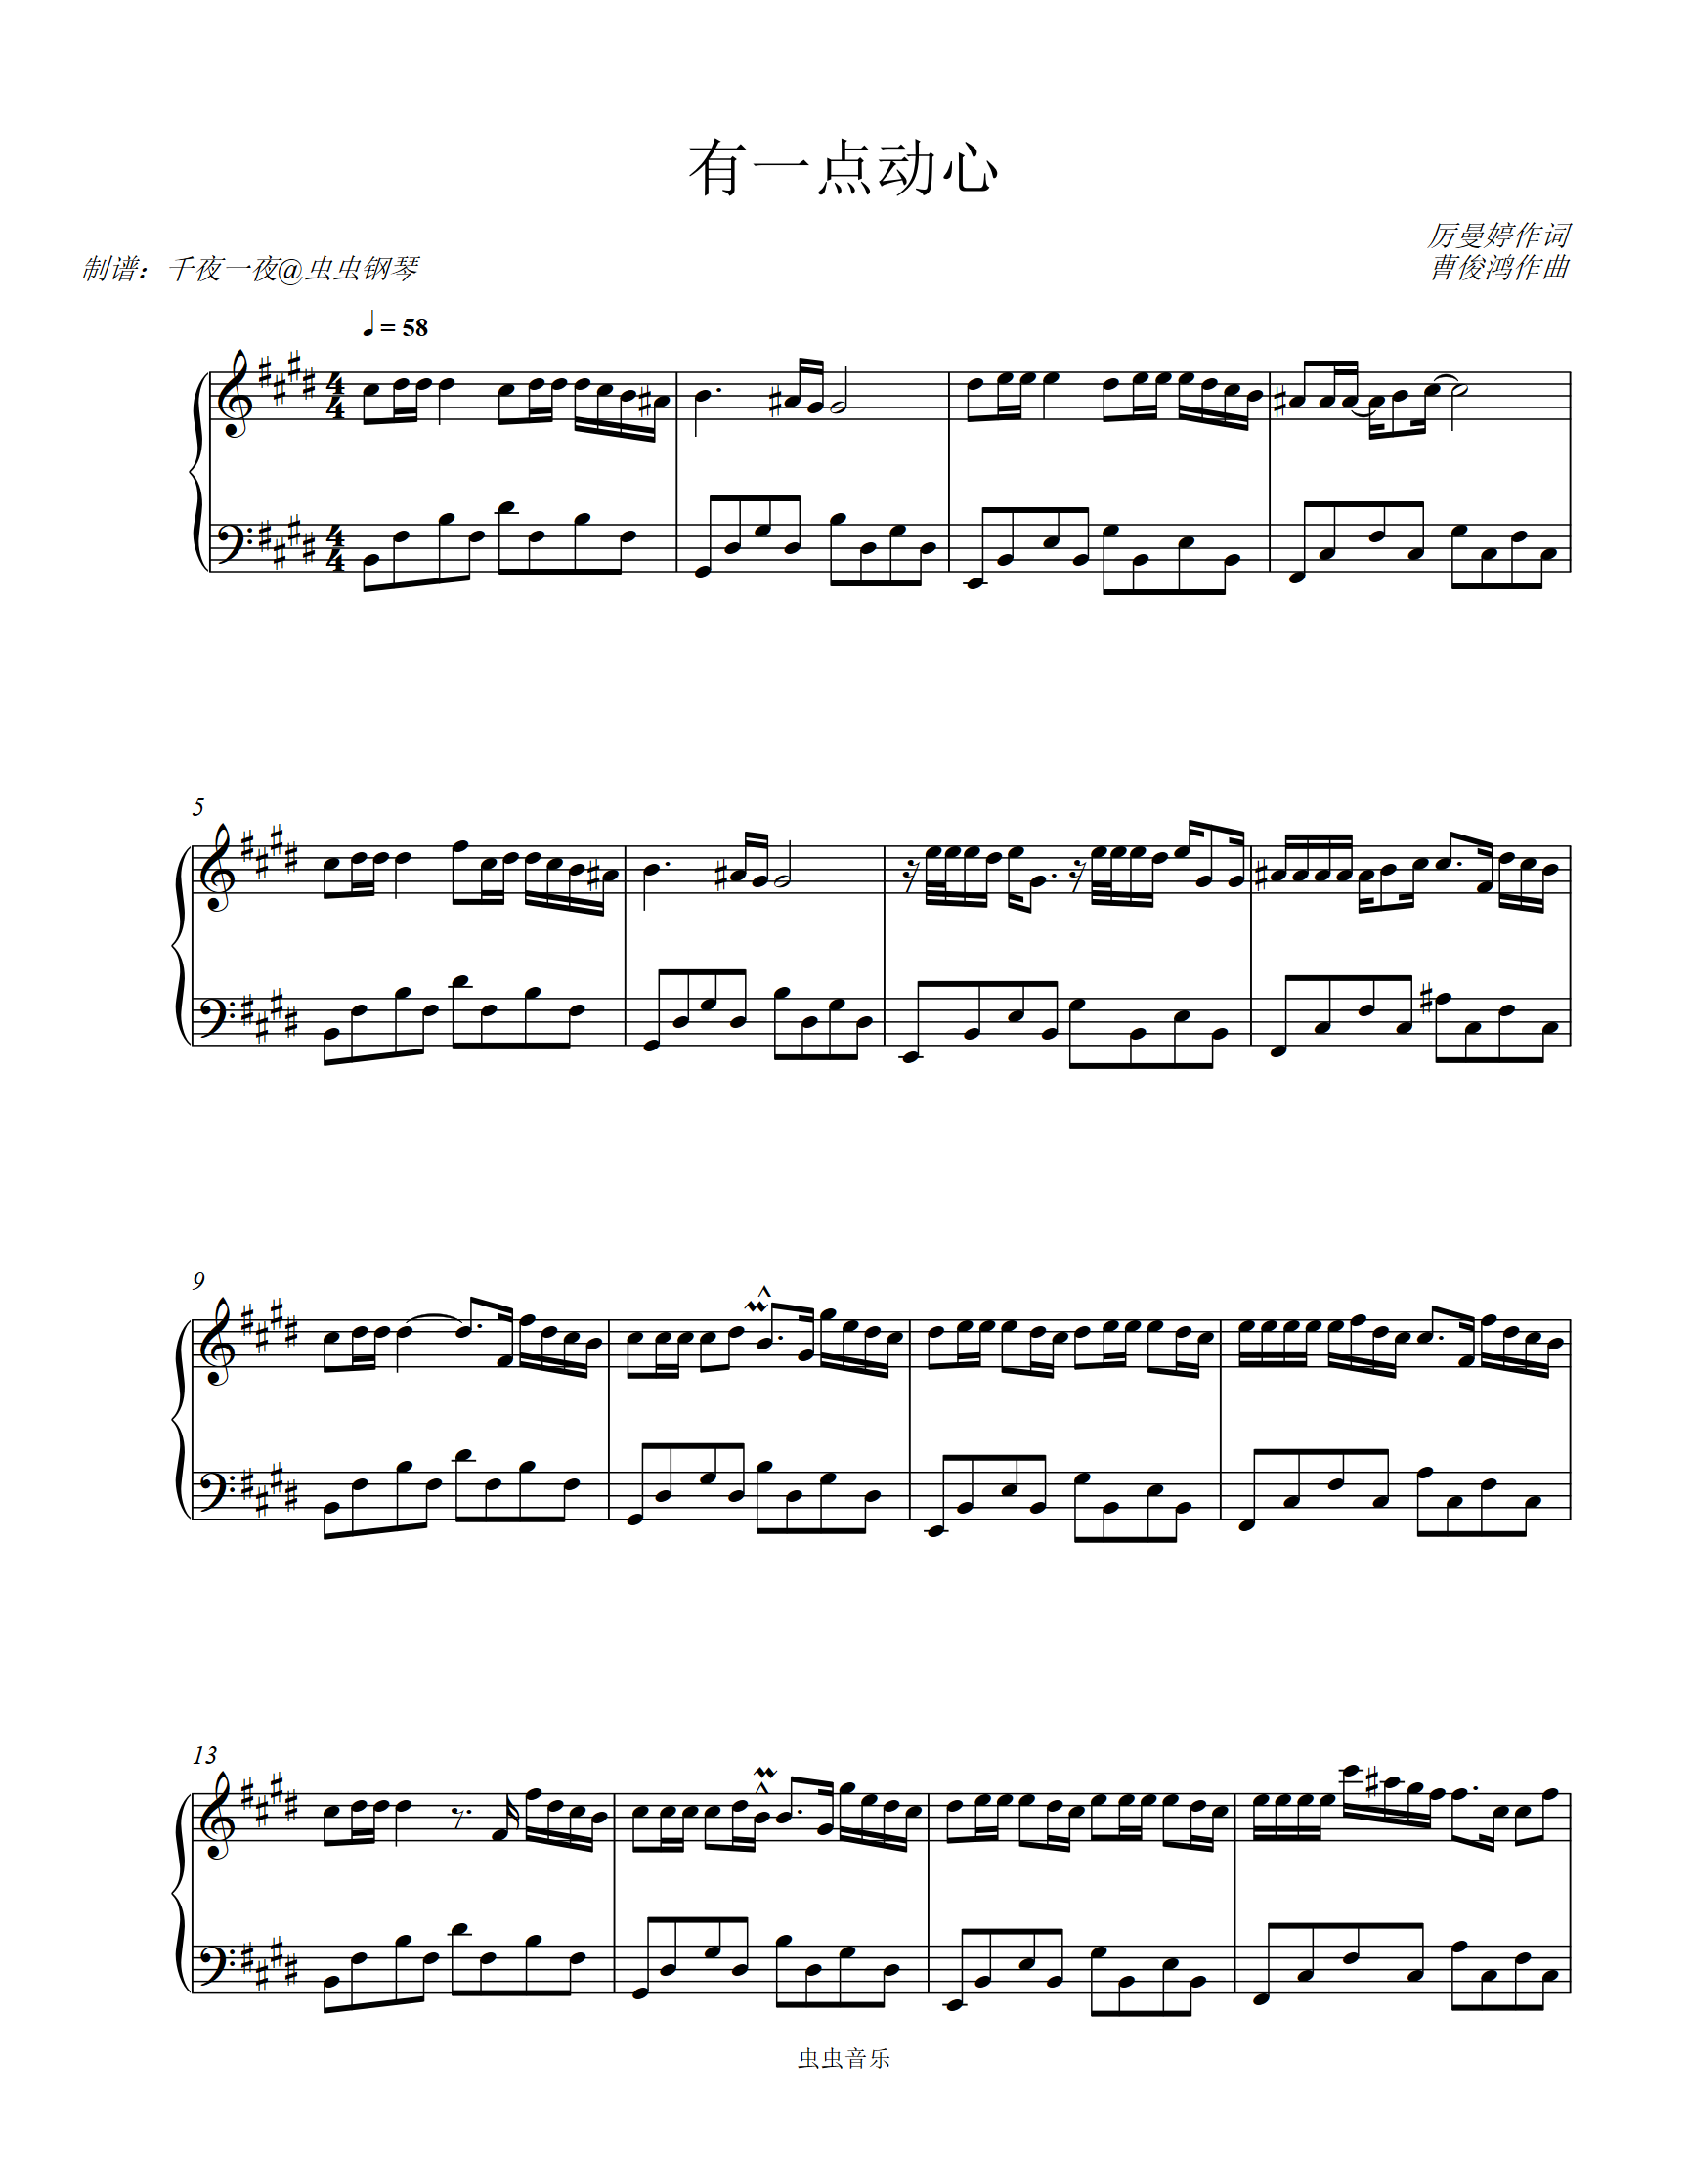 有一点动心-简单版双手简谱预览2-钢琴谱文件（五线谱、双手简谱、数字谱、Midi、PDF）免费下载